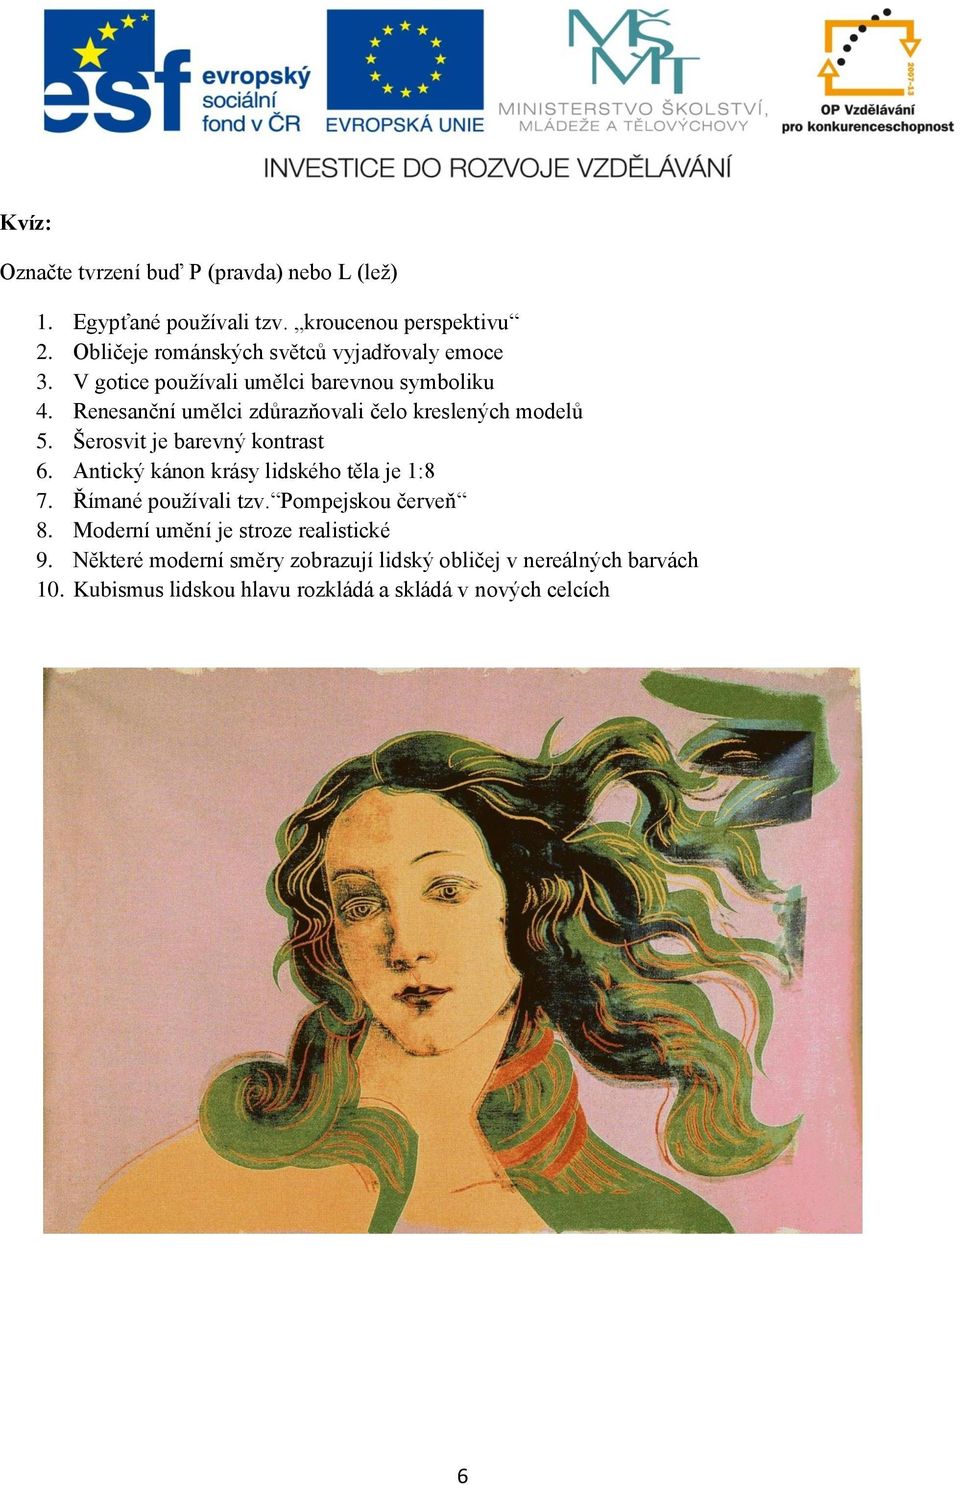 Renesanční umělci zdůrazňovali čelo kreslených modelů 5. Šerosvit je barevný kontrast 6. Antický kánon krásy lidského těla je 1:8 7.